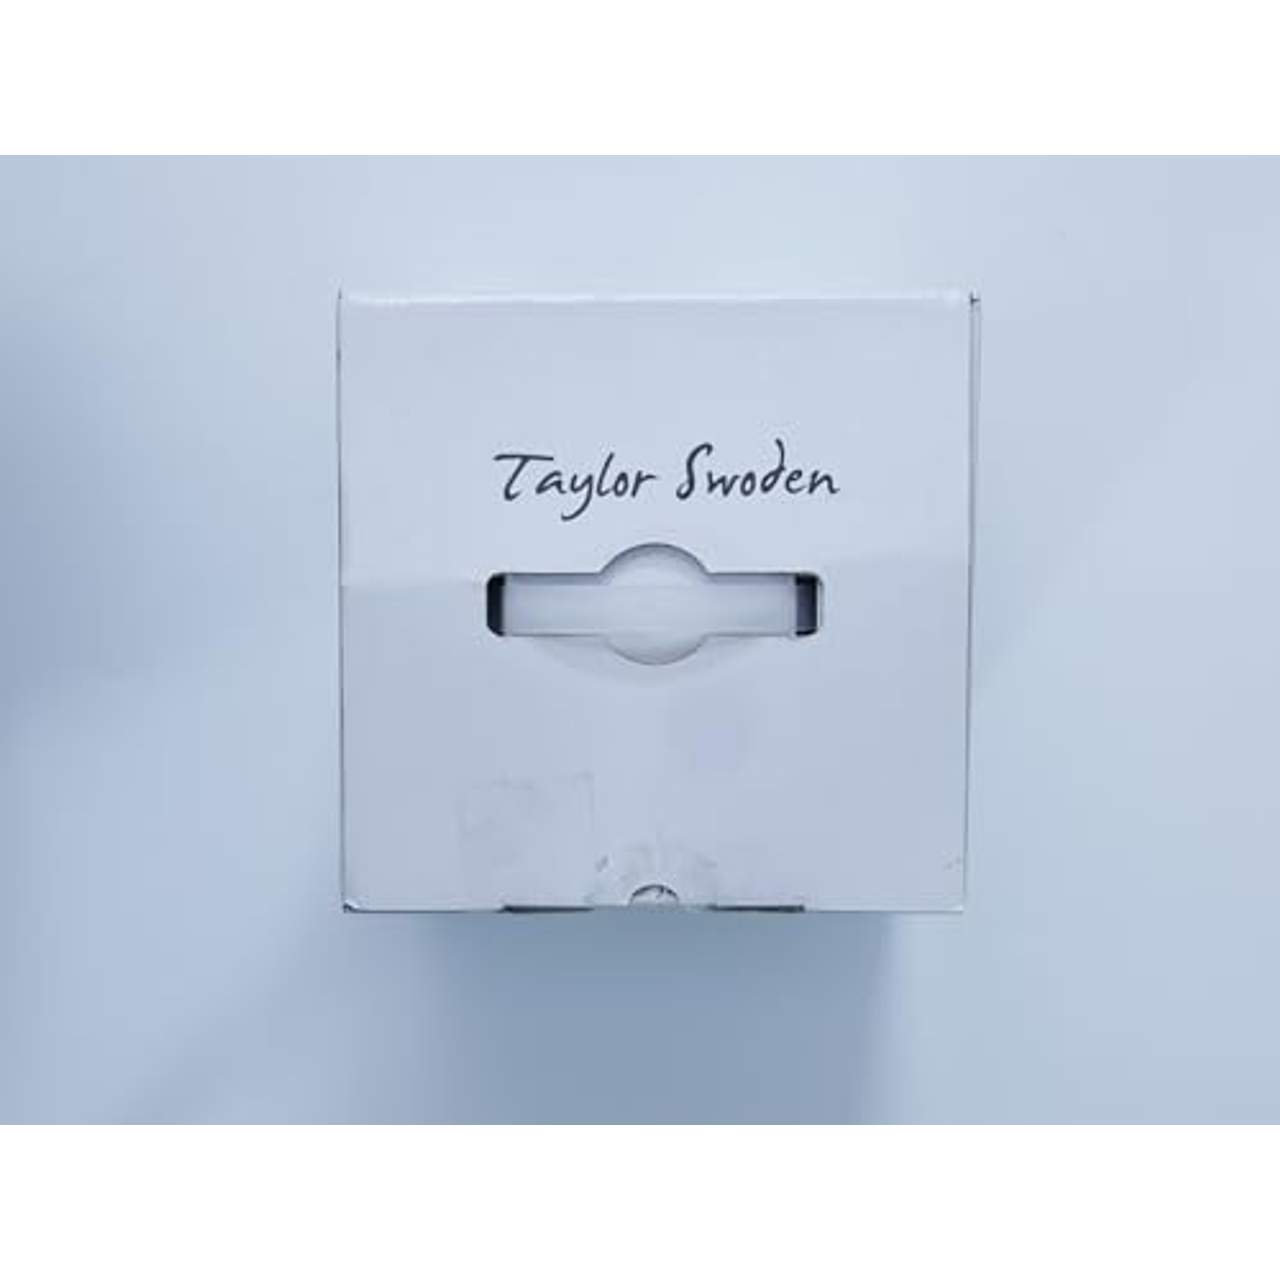 Taylor Swoden Wasserkocher mit Temperatureinstellung